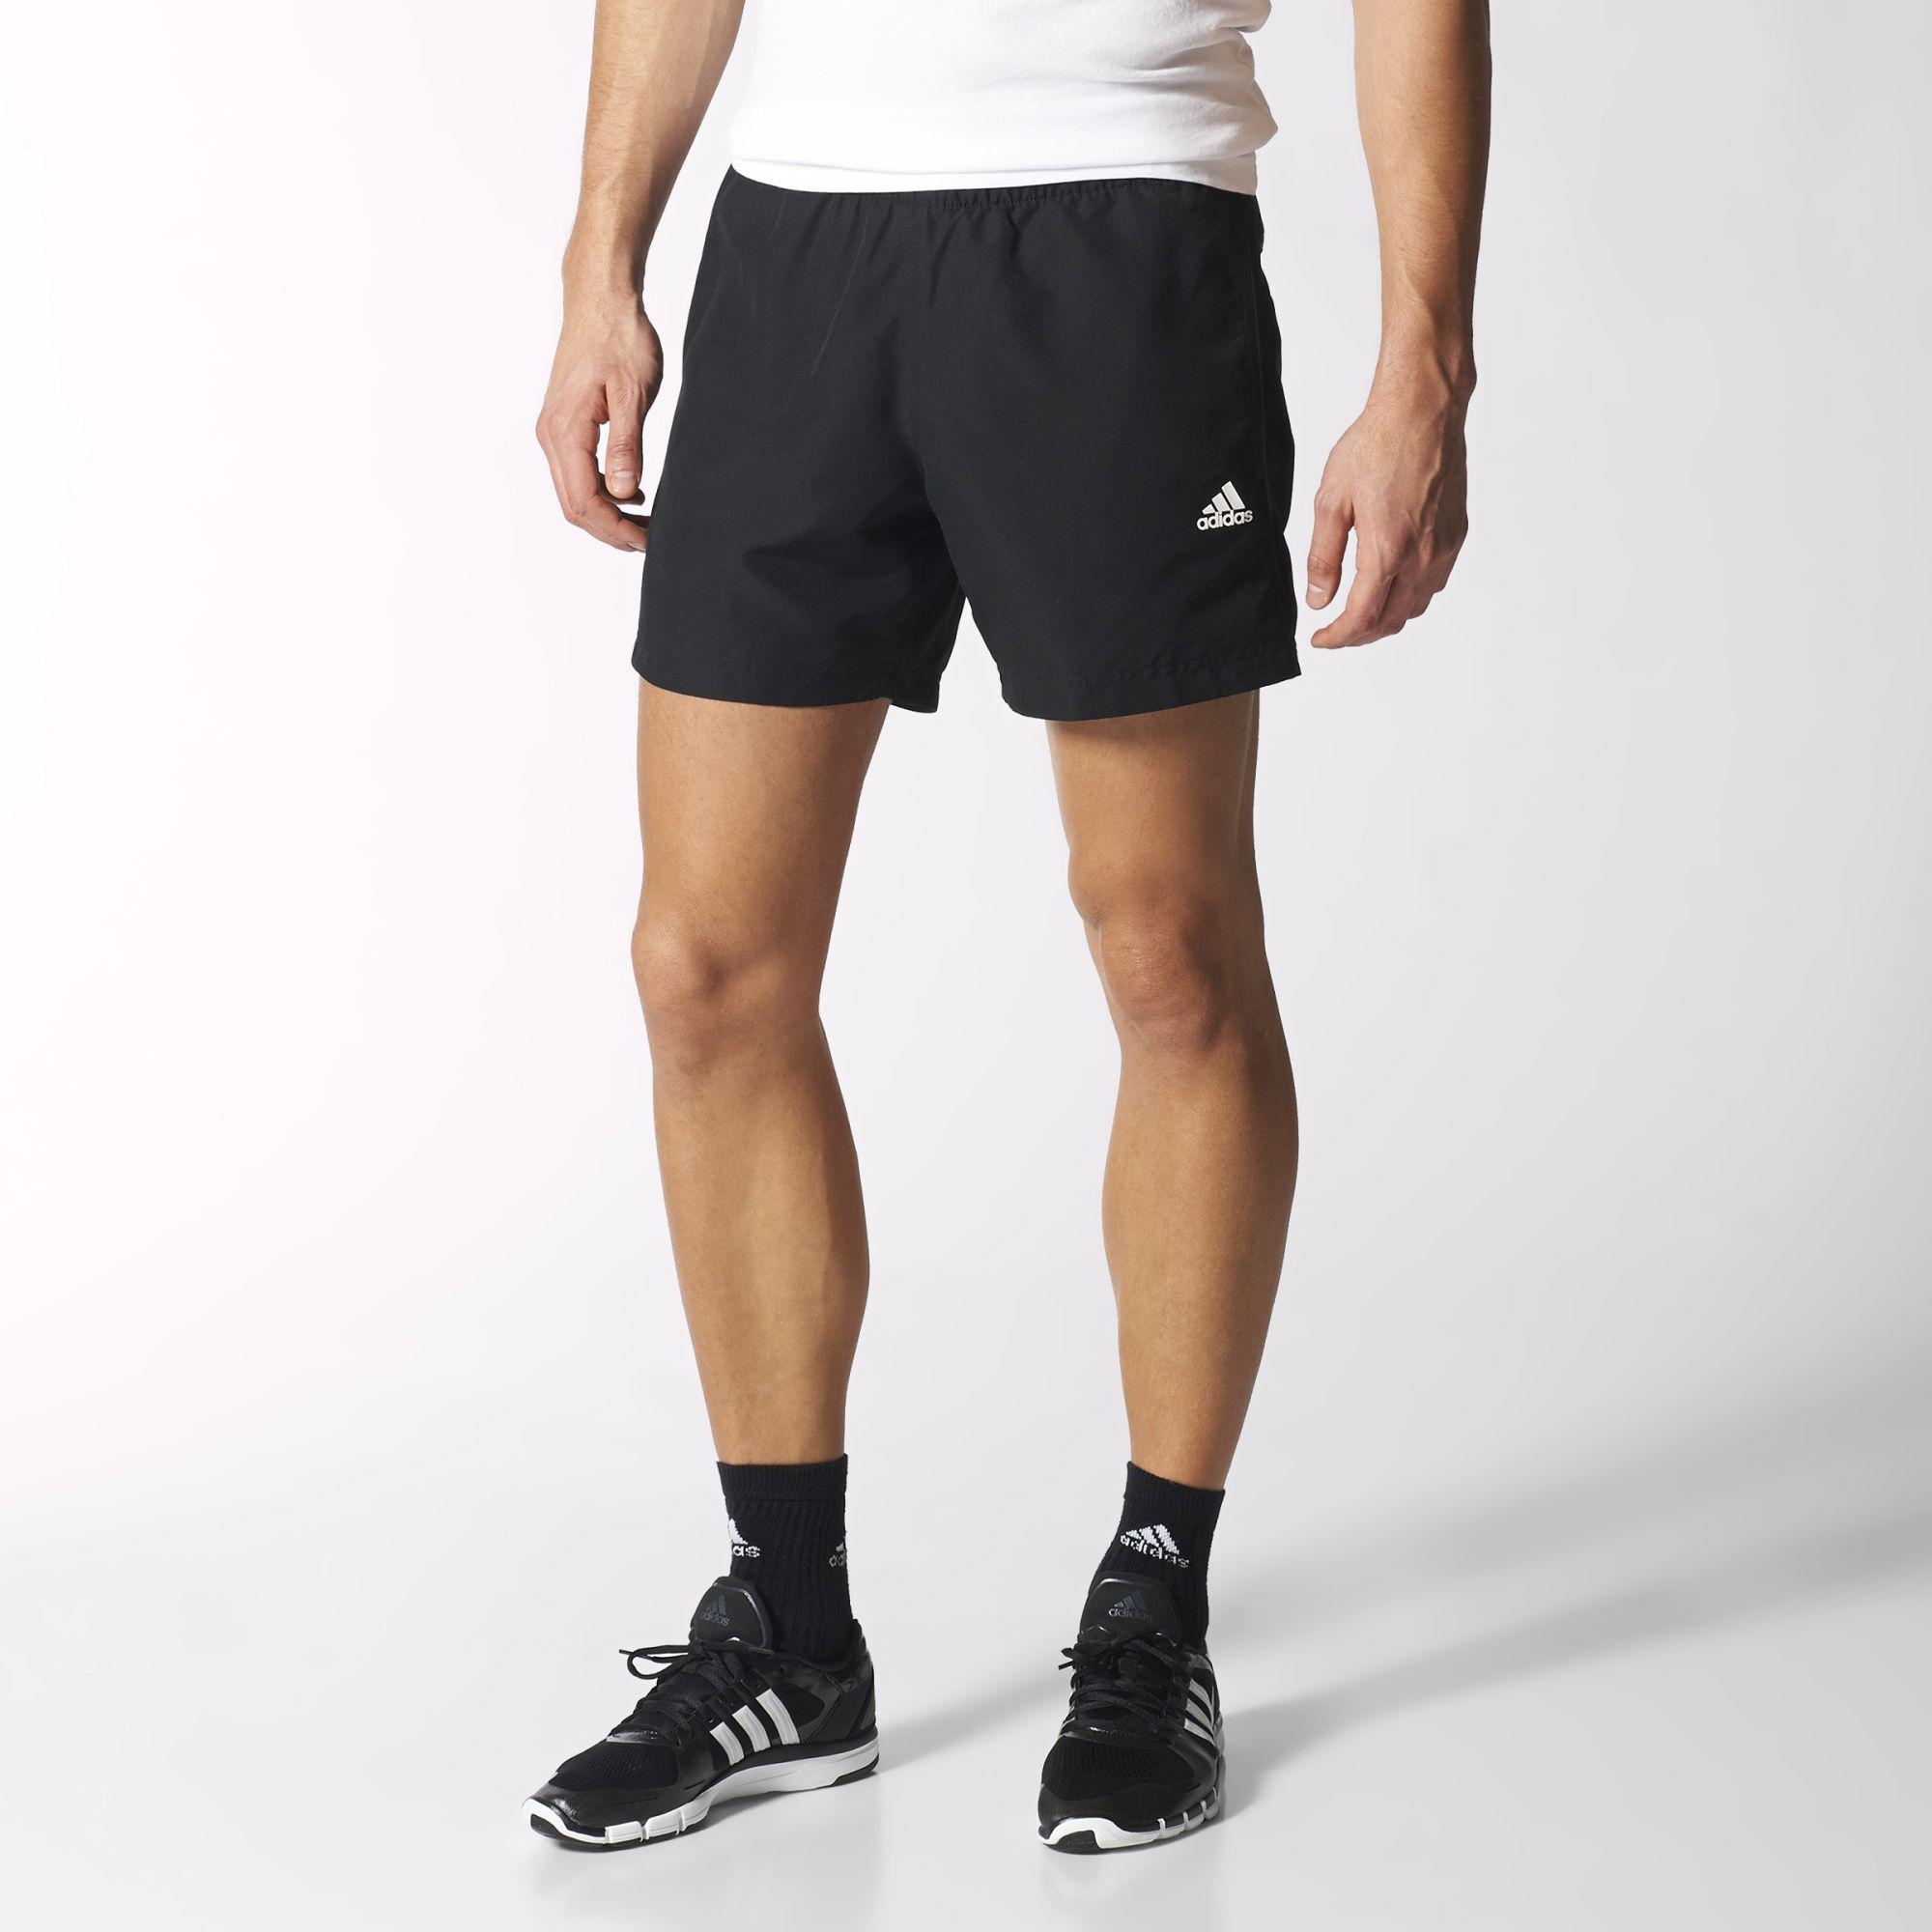 Adidas Mens Essential Chelsea Shorts - Black/White - Tennisnuts.com